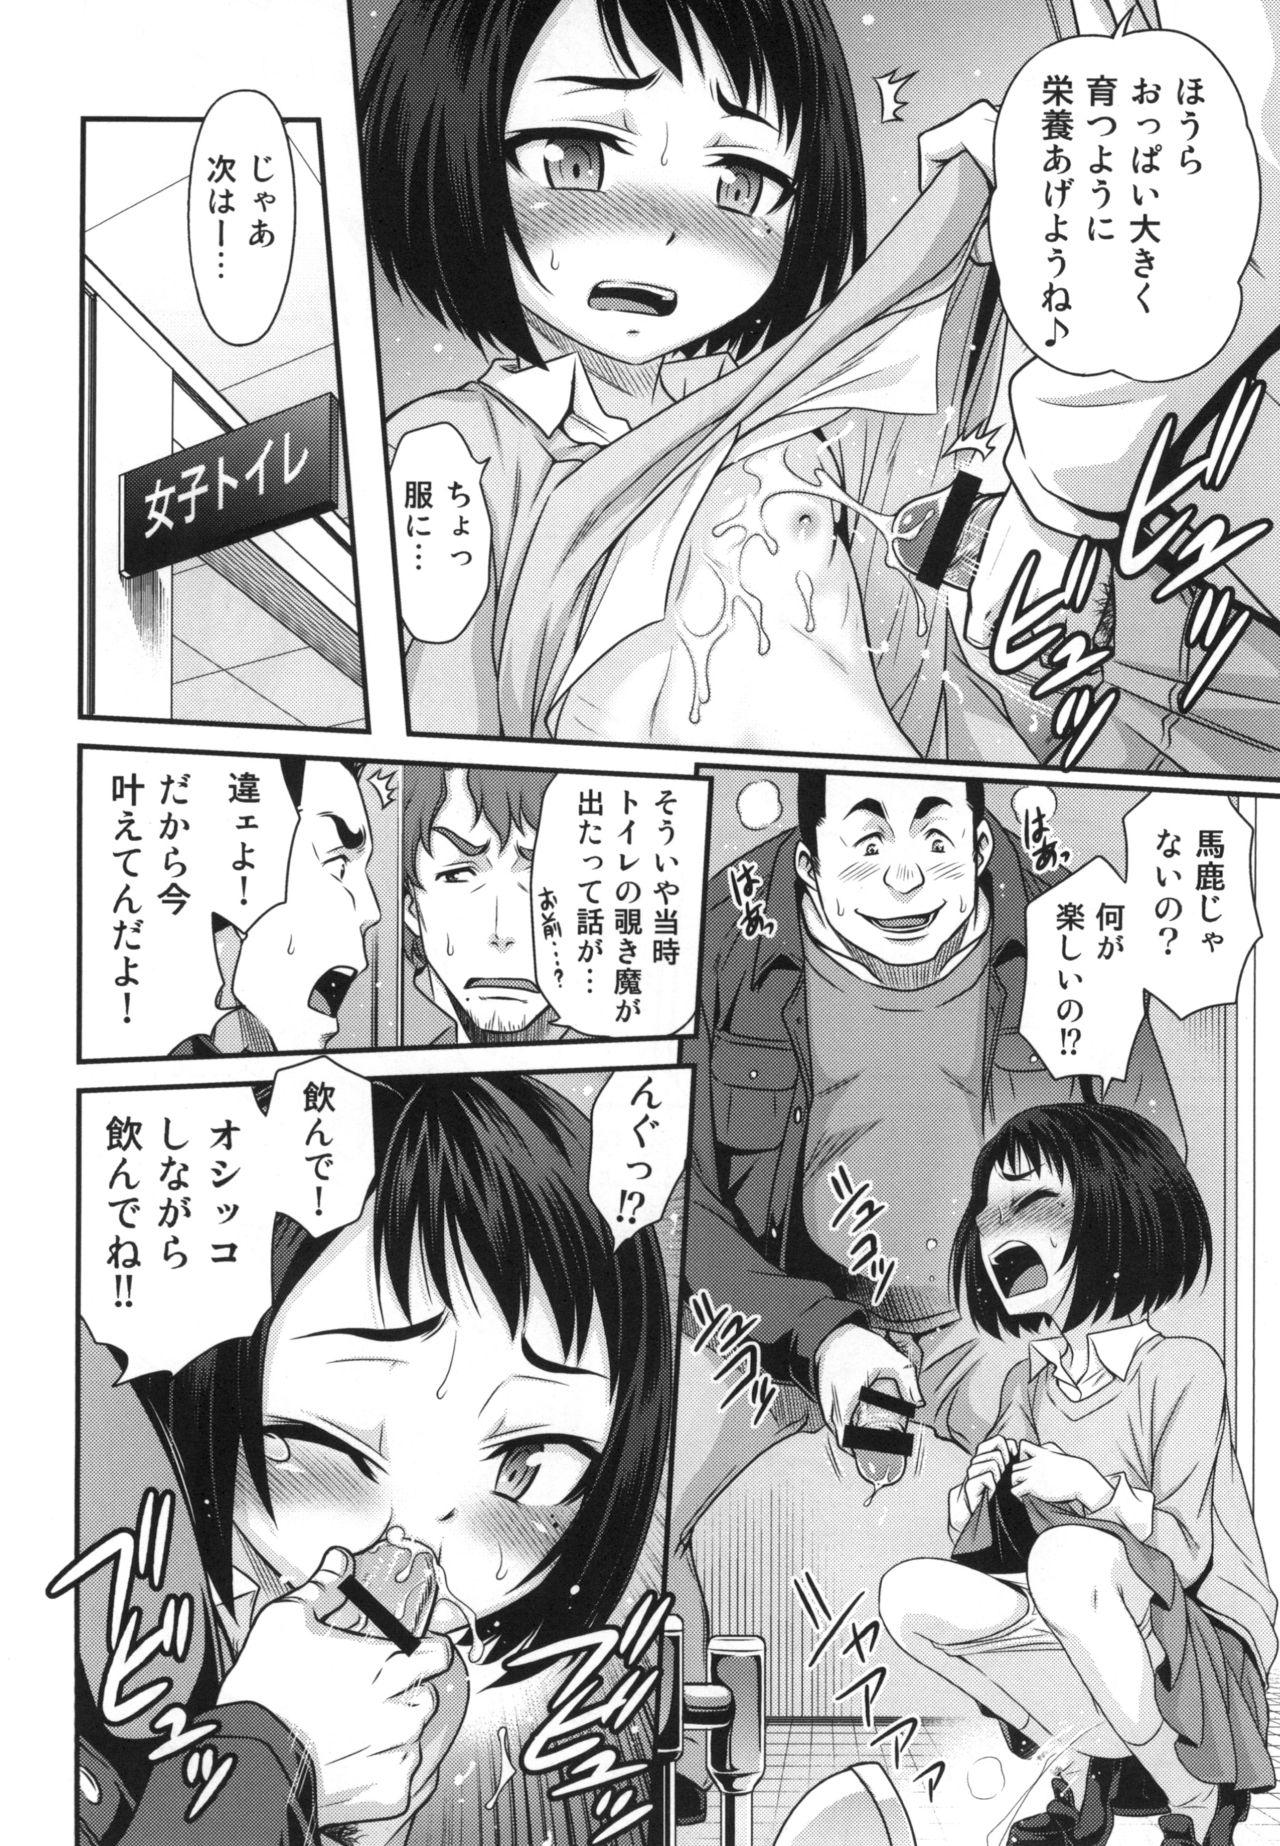 Food Erika no ChupaChupa Quest!! - Sakura quest Throat - Page 12